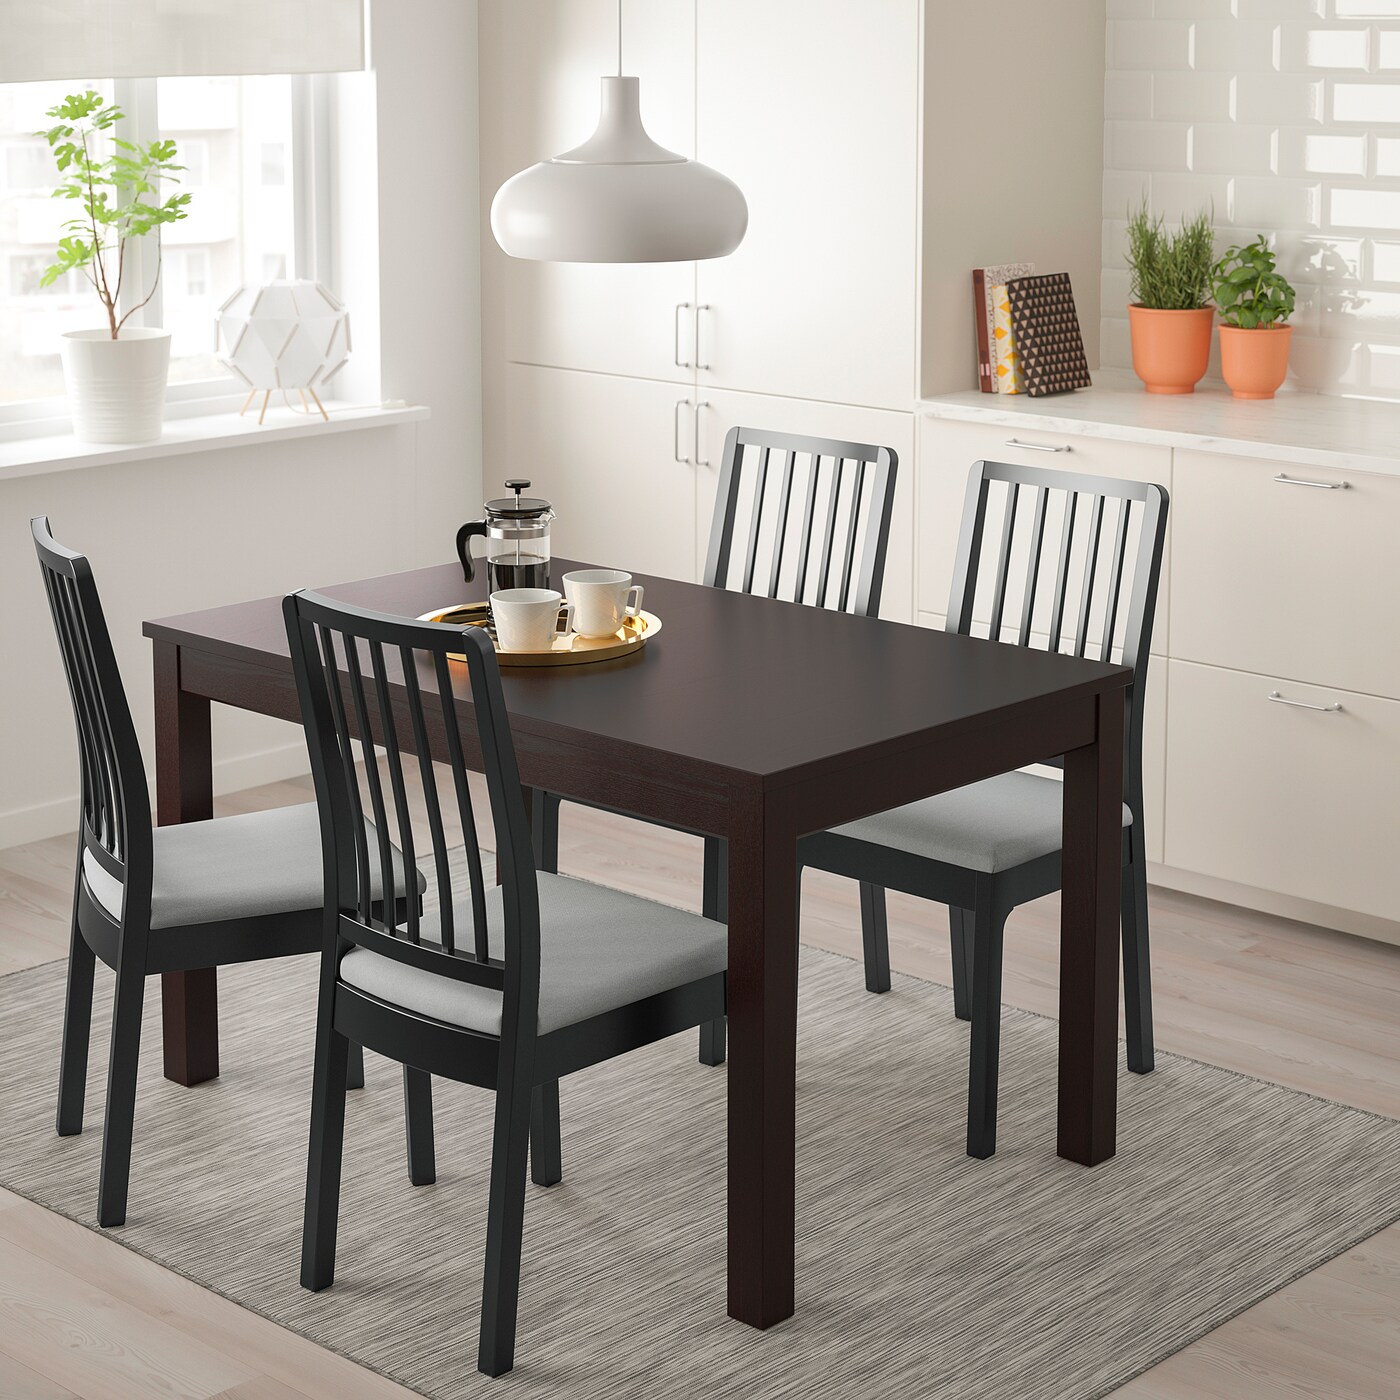 белый стол и коричневые стулья